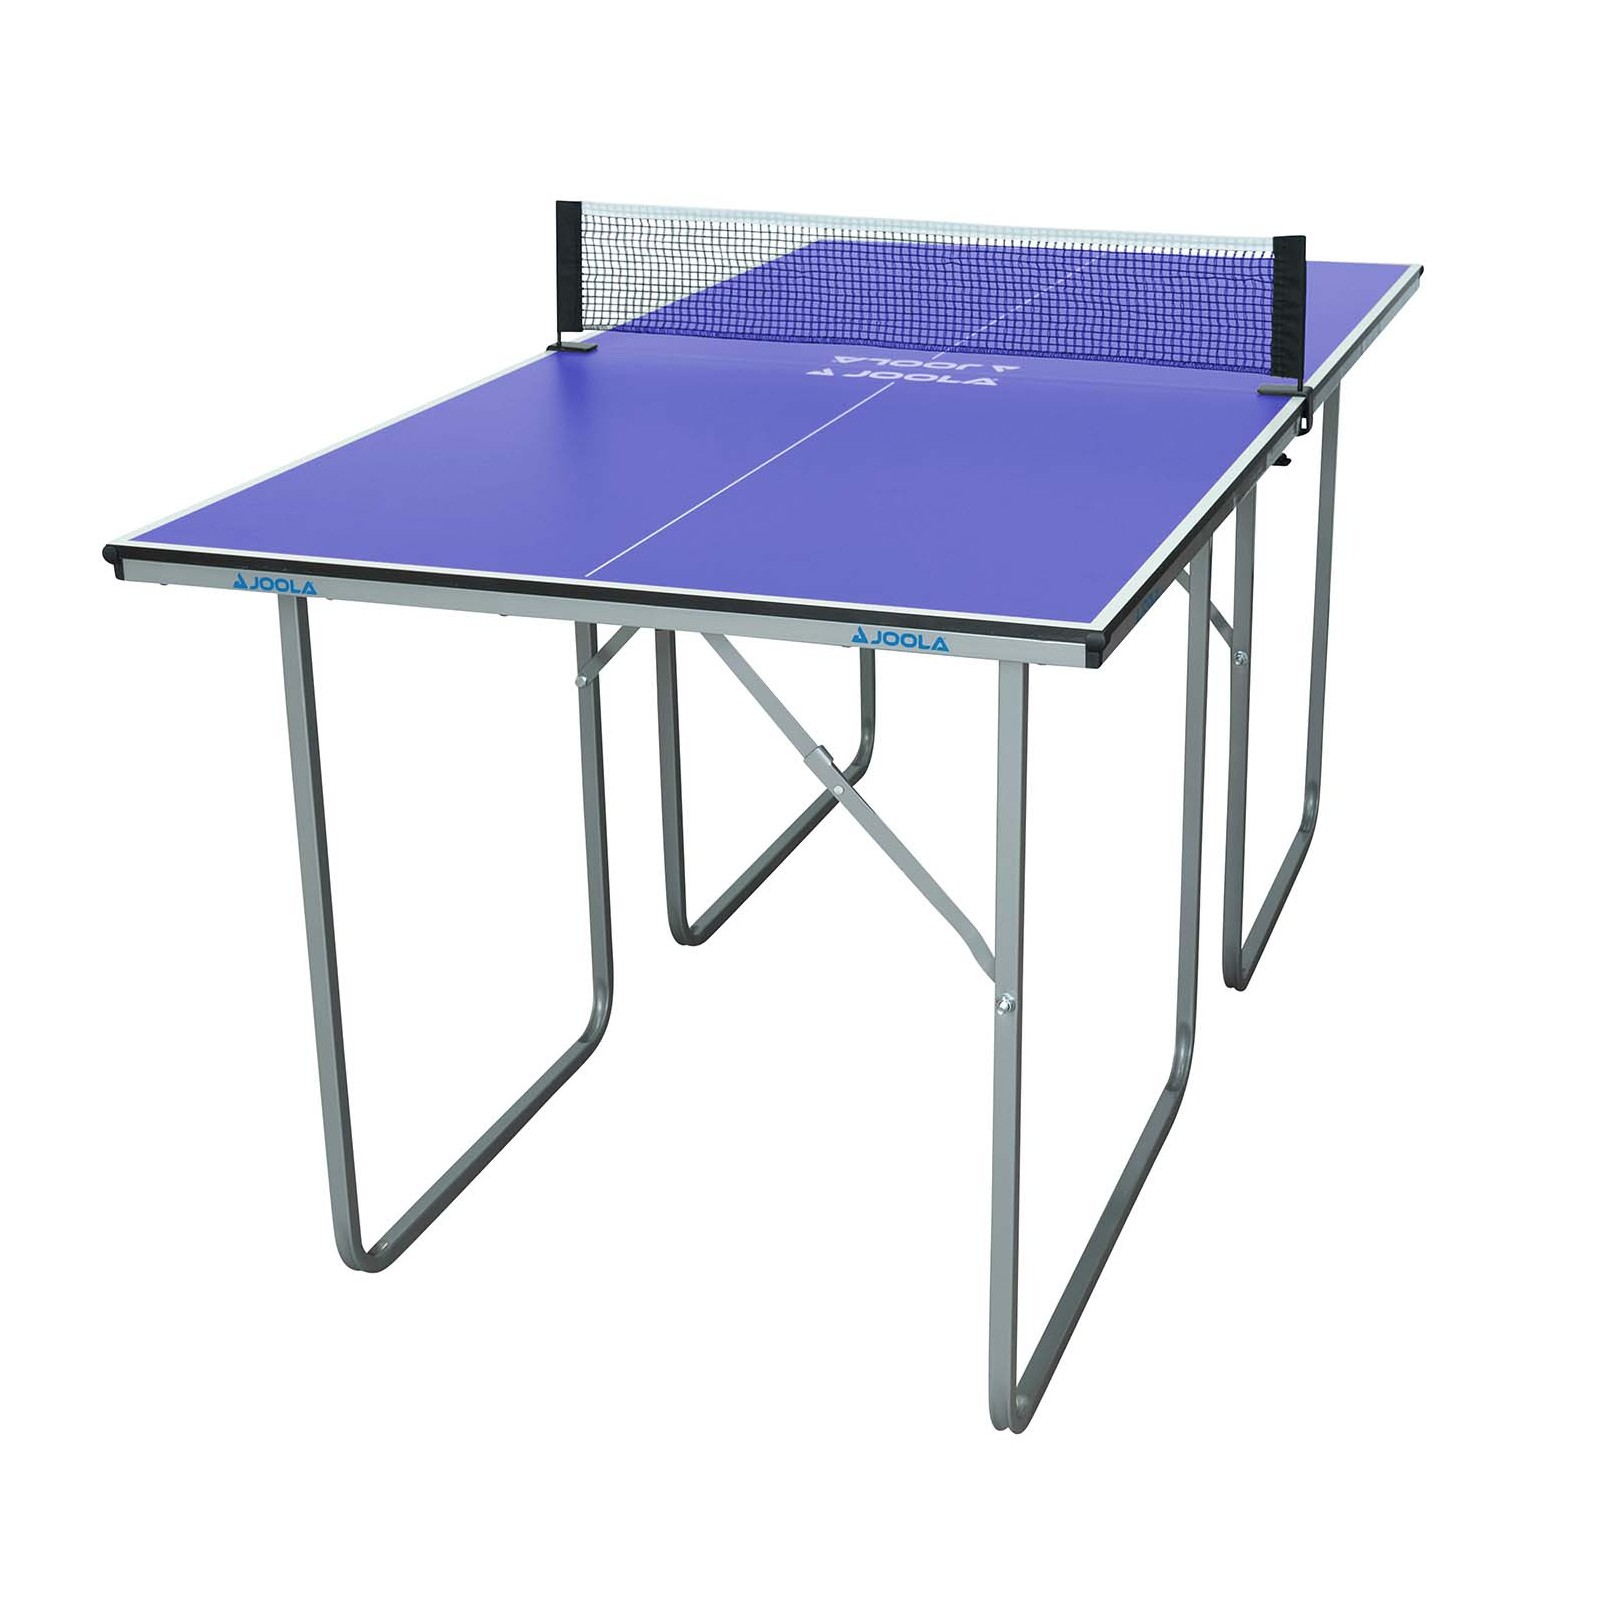 Joola Mid Size Table Fitshop Tennis Table 